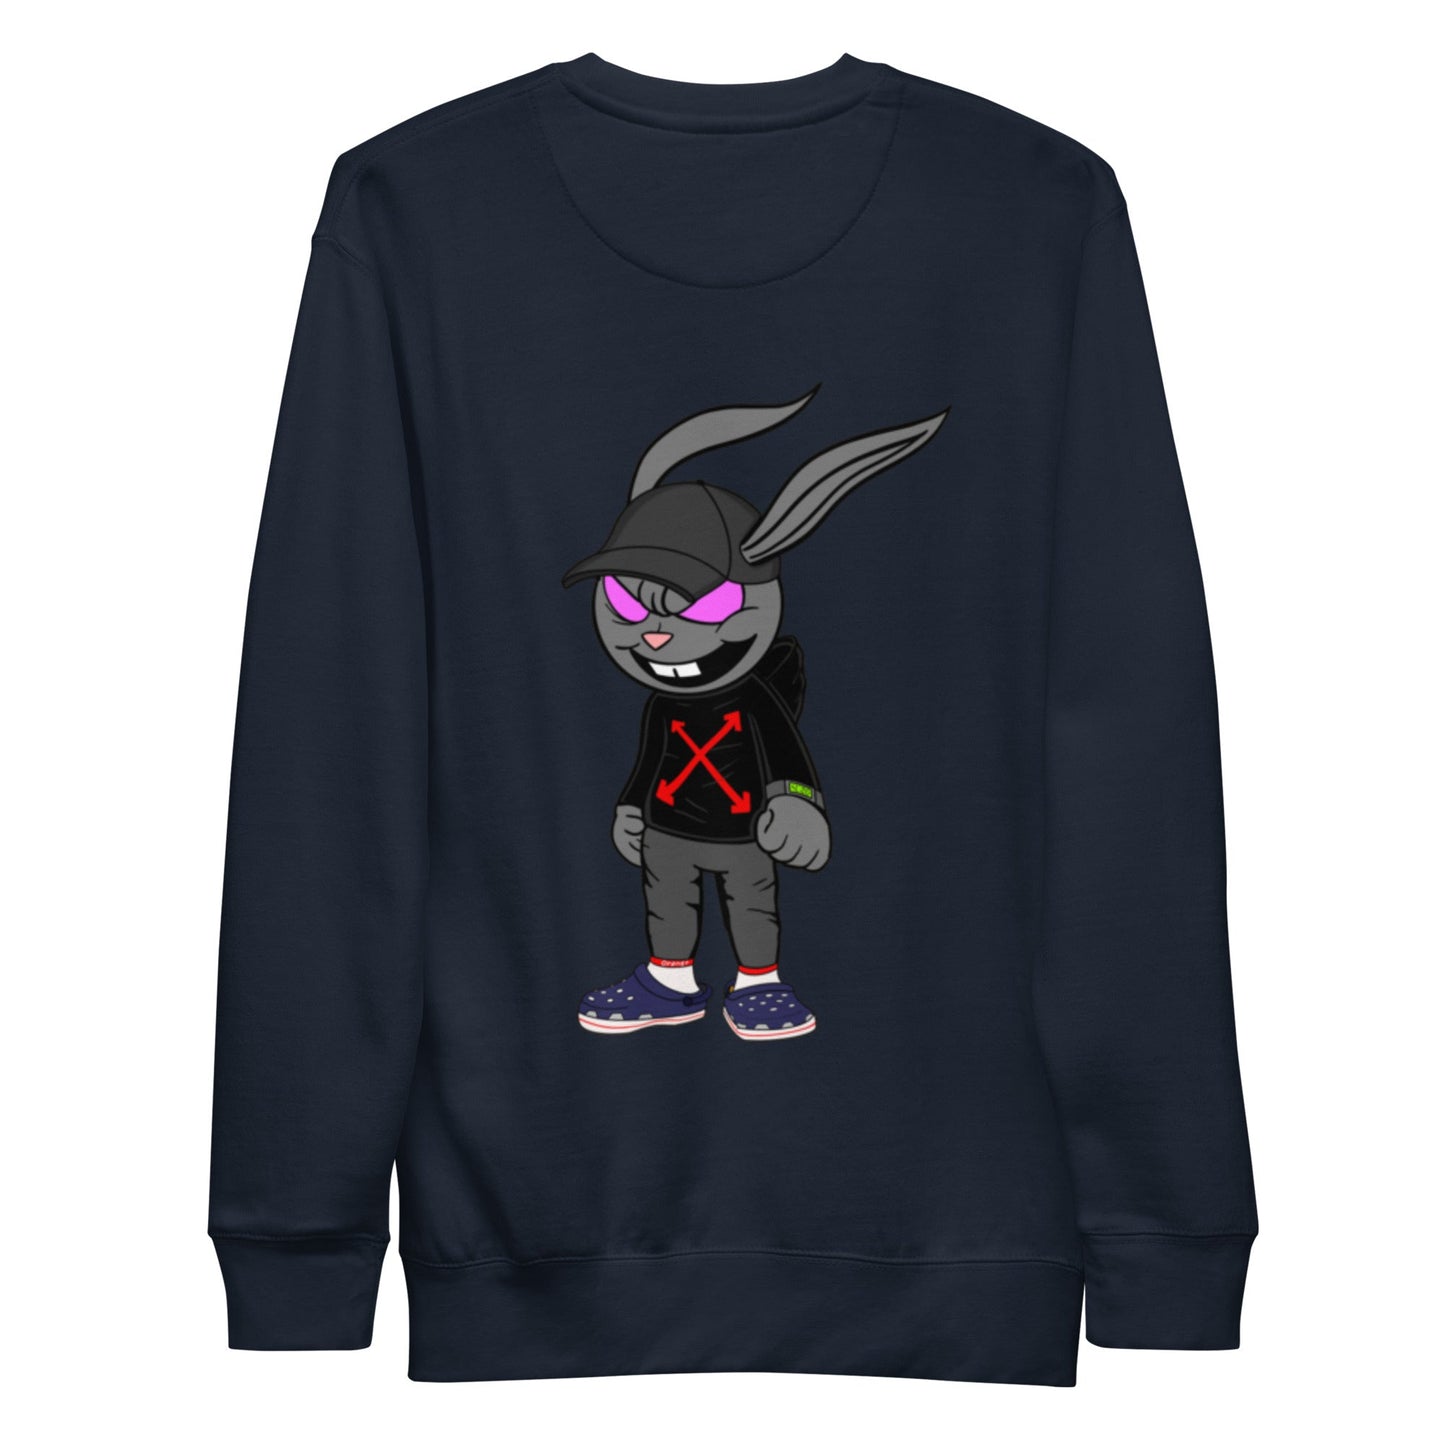 ASH Style 3 Sweatshirt